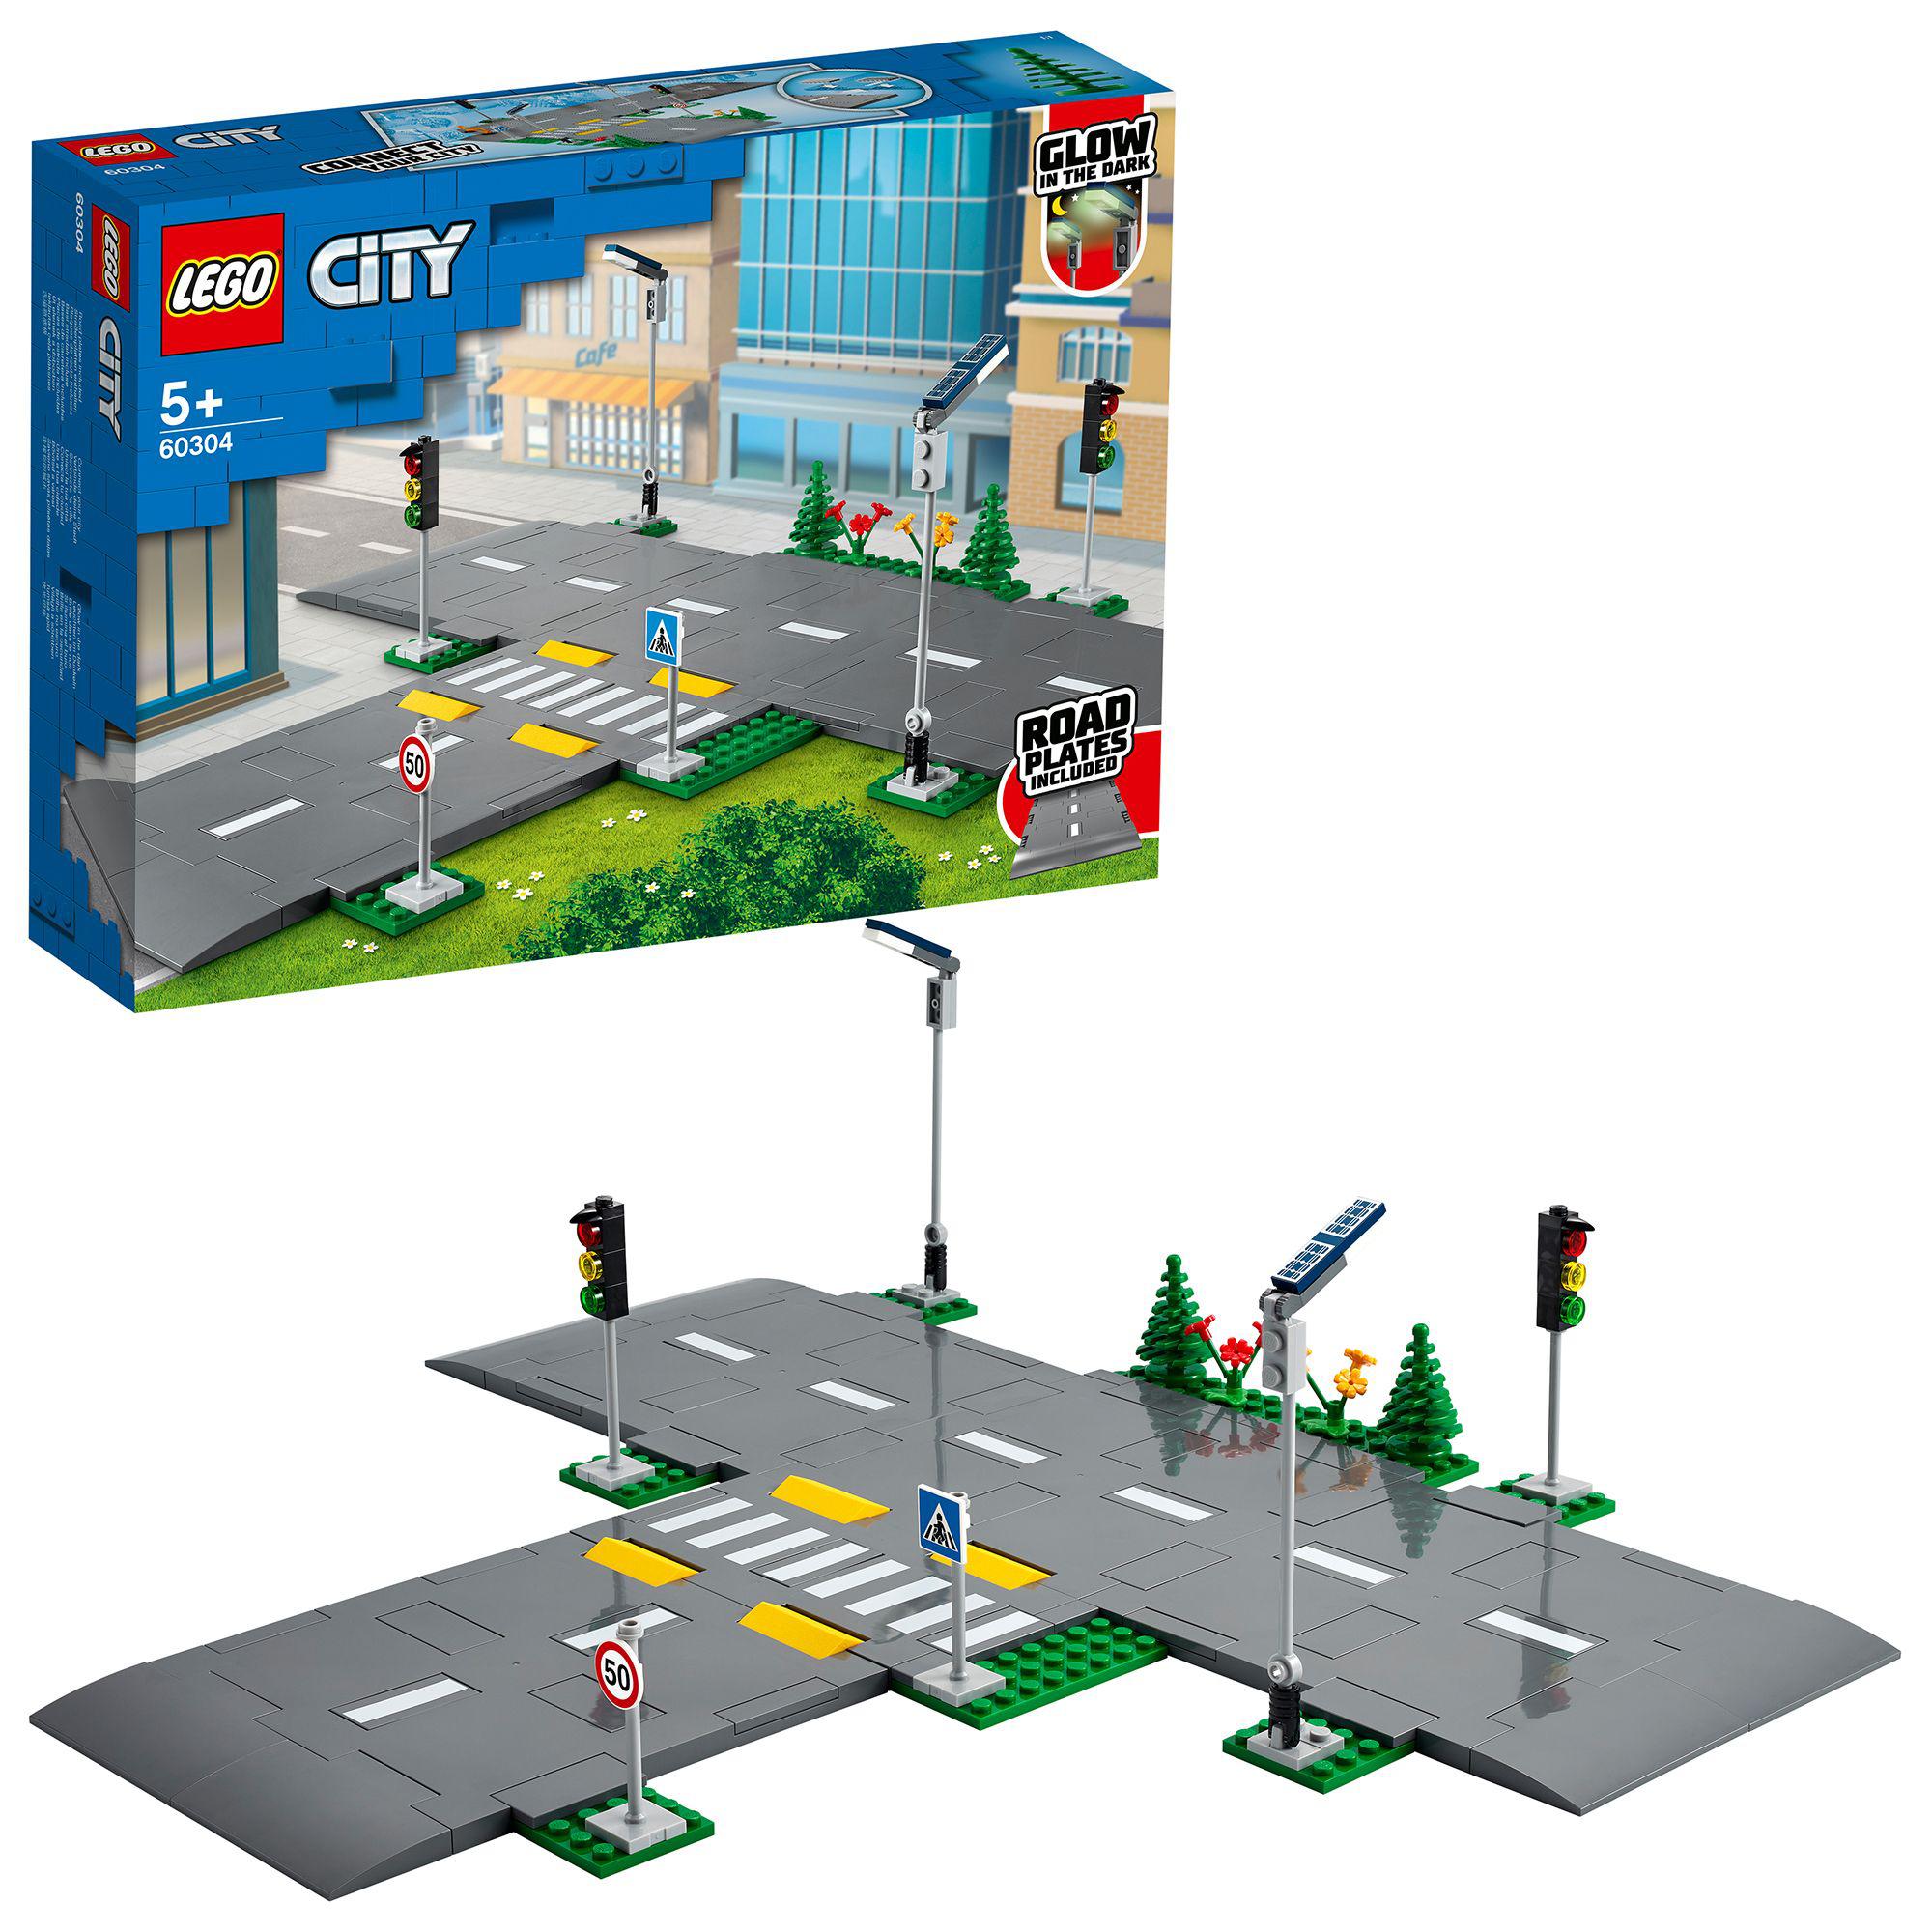 Lego city 60304 piattaforme stradali, set basi con lampioni fosforescenti, semafori giocattolo, cartelli e segnaletica, toys center - LEGO CITY, Lego